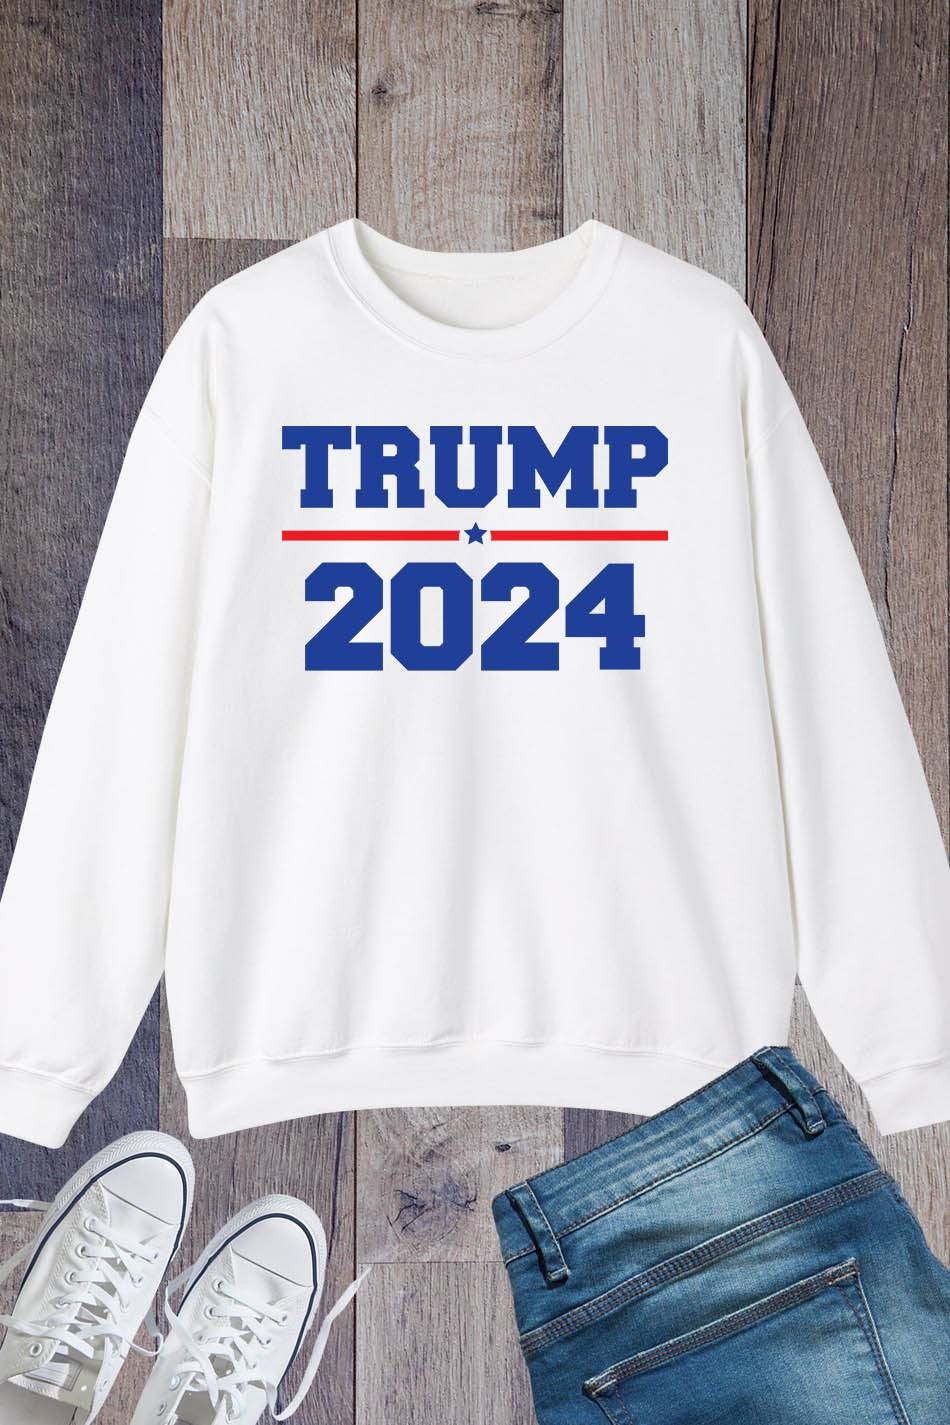 Trump 2024 Election Campaign Sweatshirt